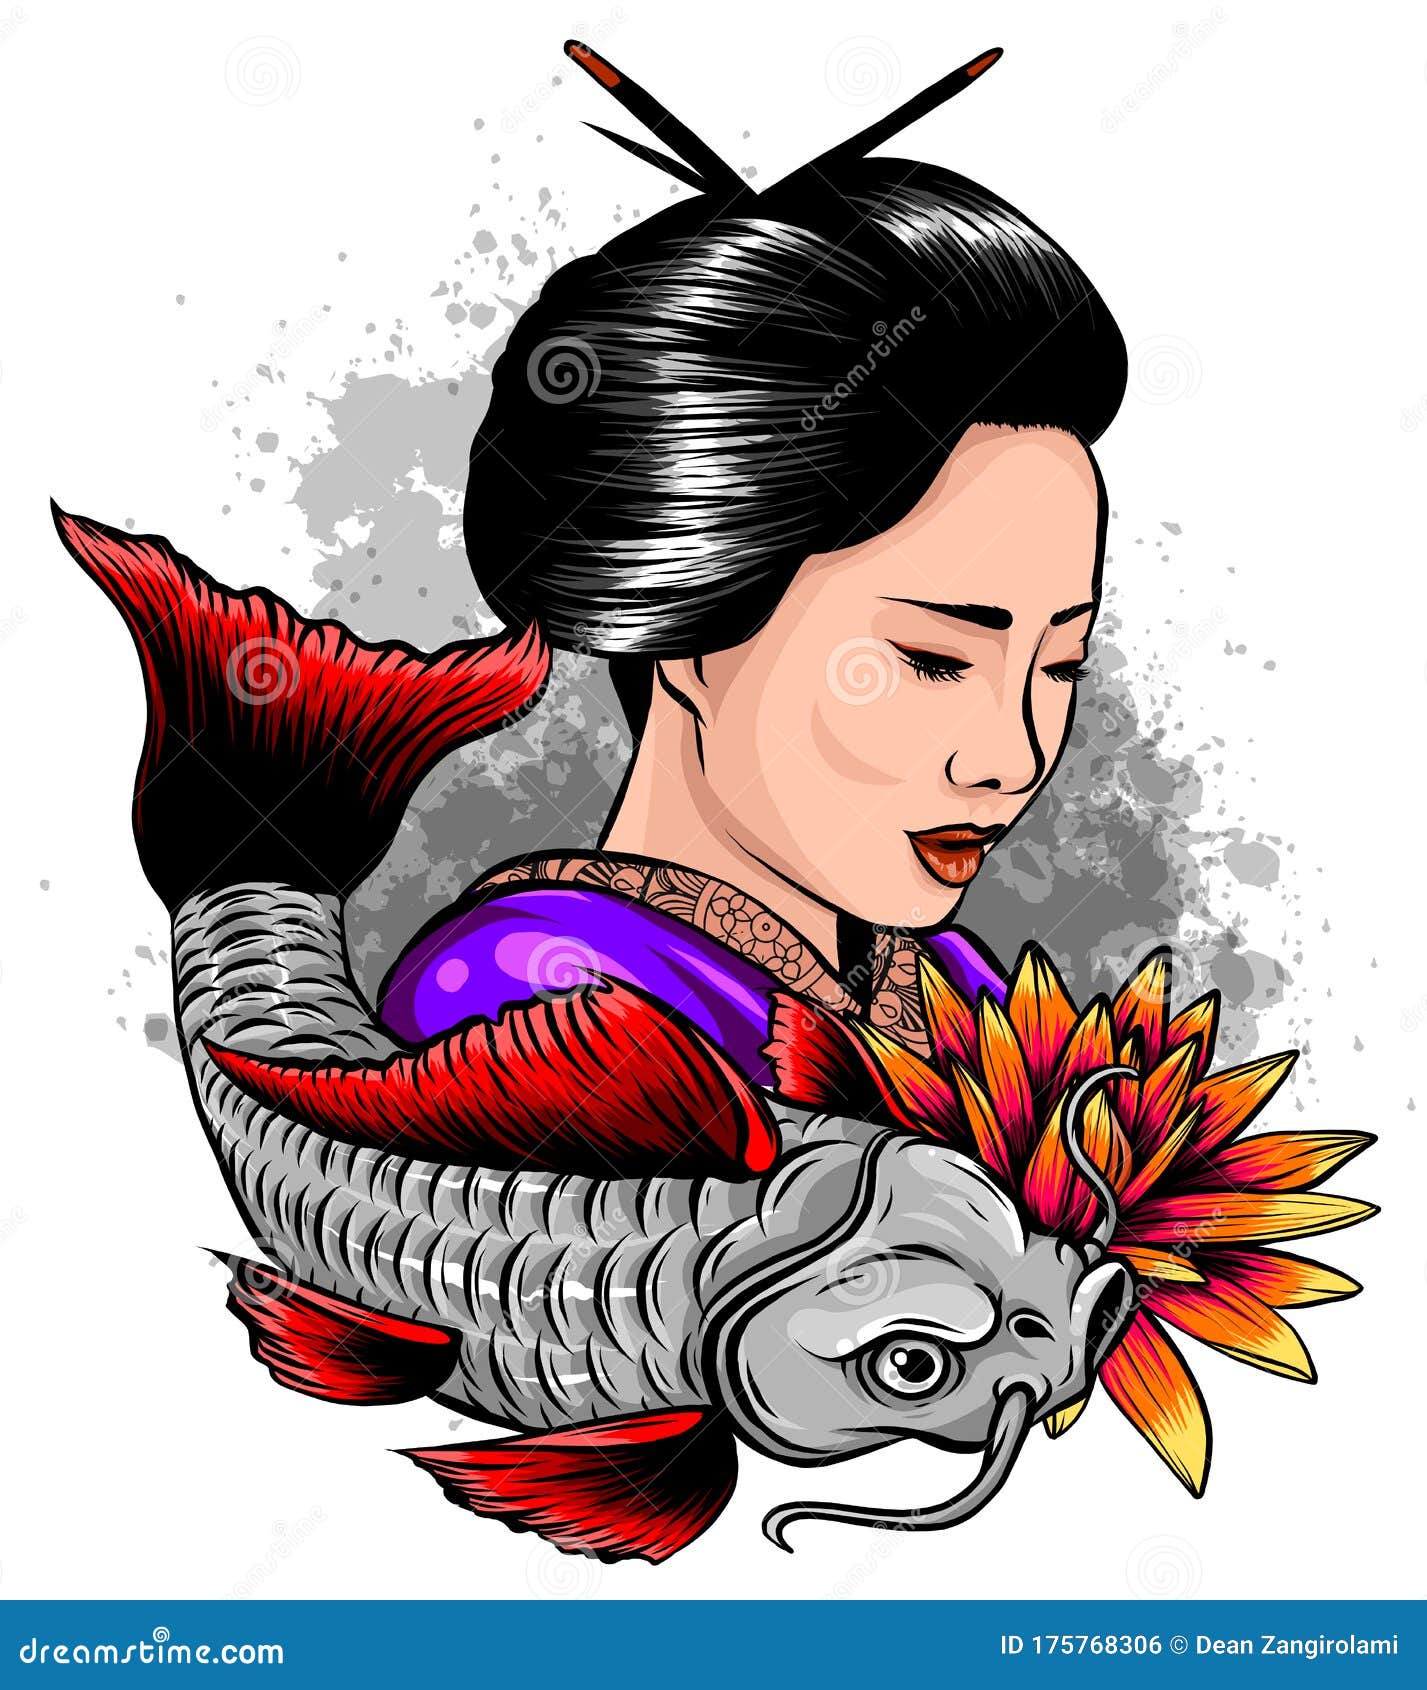 Share 145+ girly koi fish tattoo